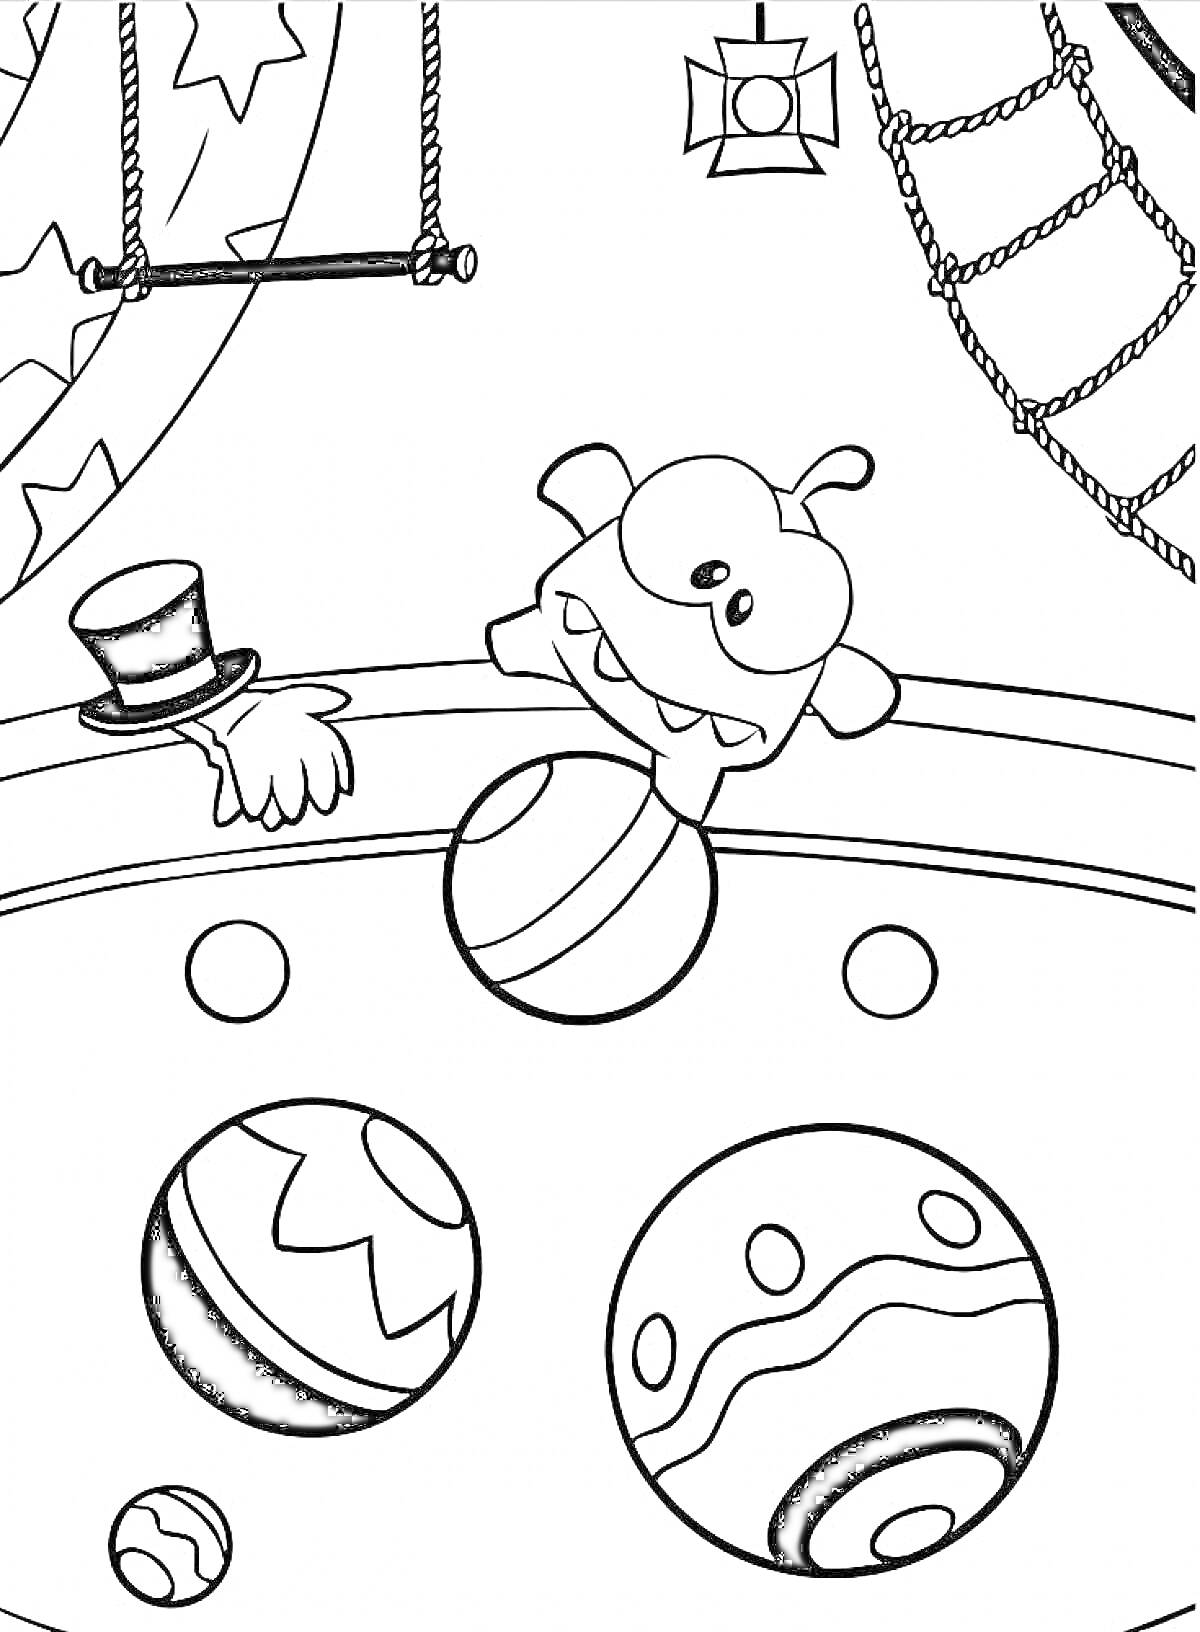 Раскраска Ам Ням в цирке - Ам Ням с загнутым языком и вращающимися глазами внутри бассейна с мячами, шляпа с рукой на краю бассейна, канаты и трапеция на заднем плане, шторы со звездами